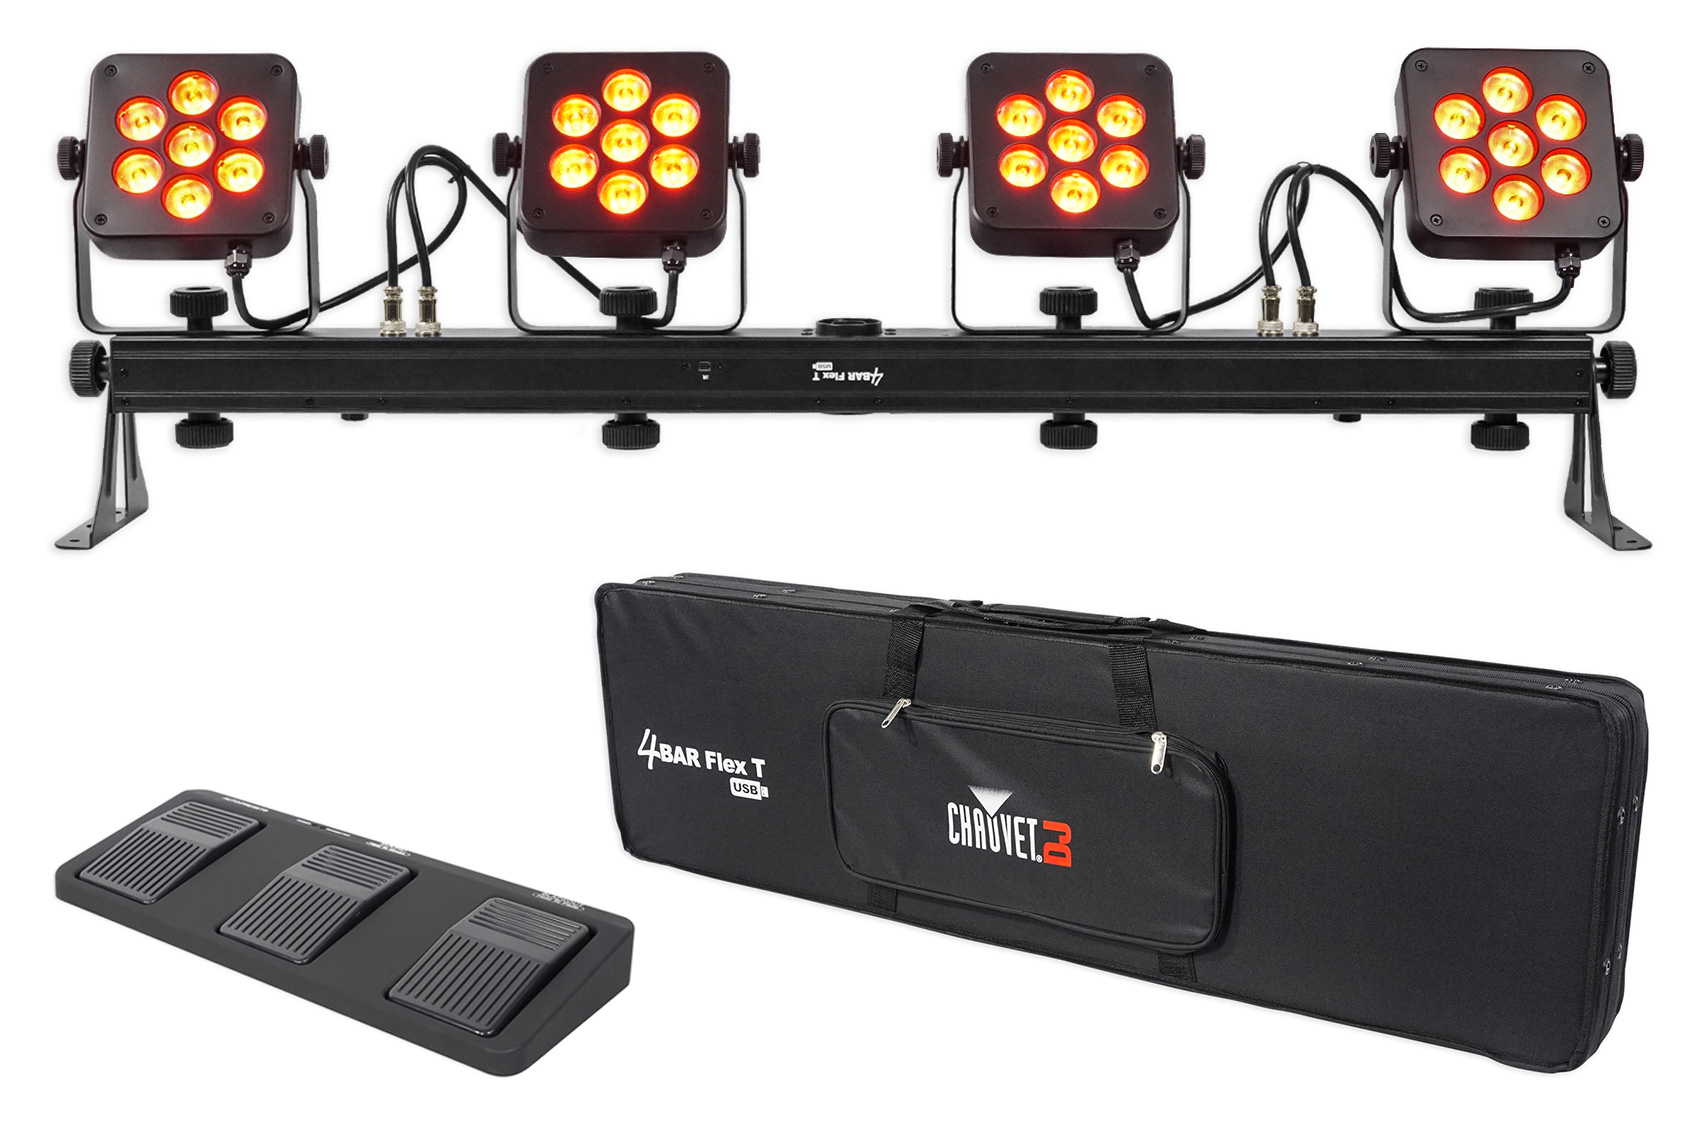 Chauvet DJ 4Bar Flex T USB D-Fi Light Bar+Stand+Case+Foot Switch+DMX